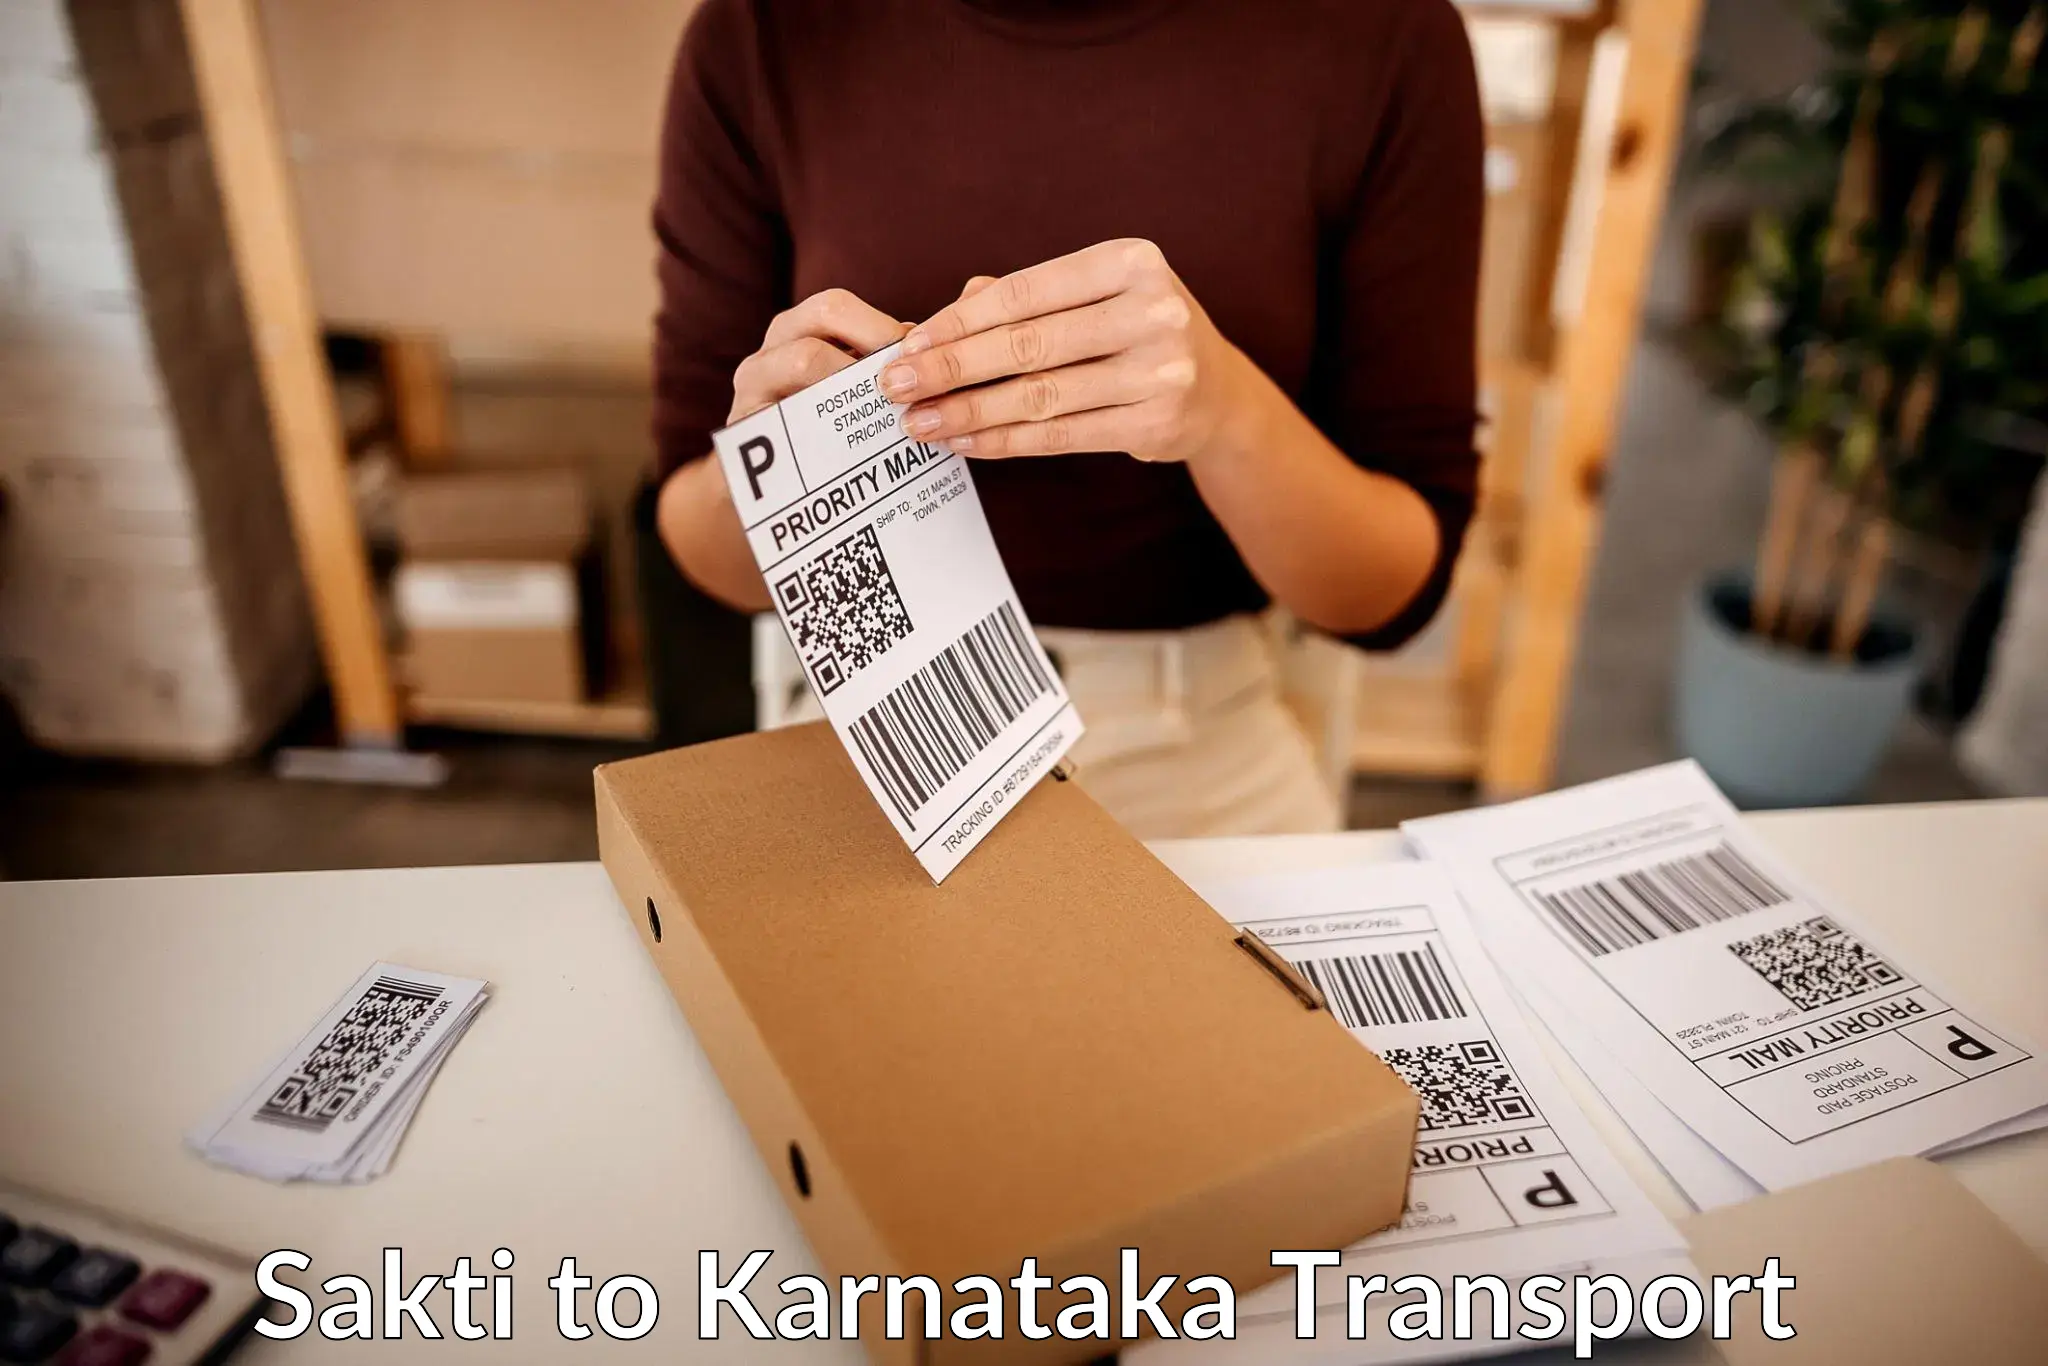 Shipping partner Sakti to Kalaghatgi